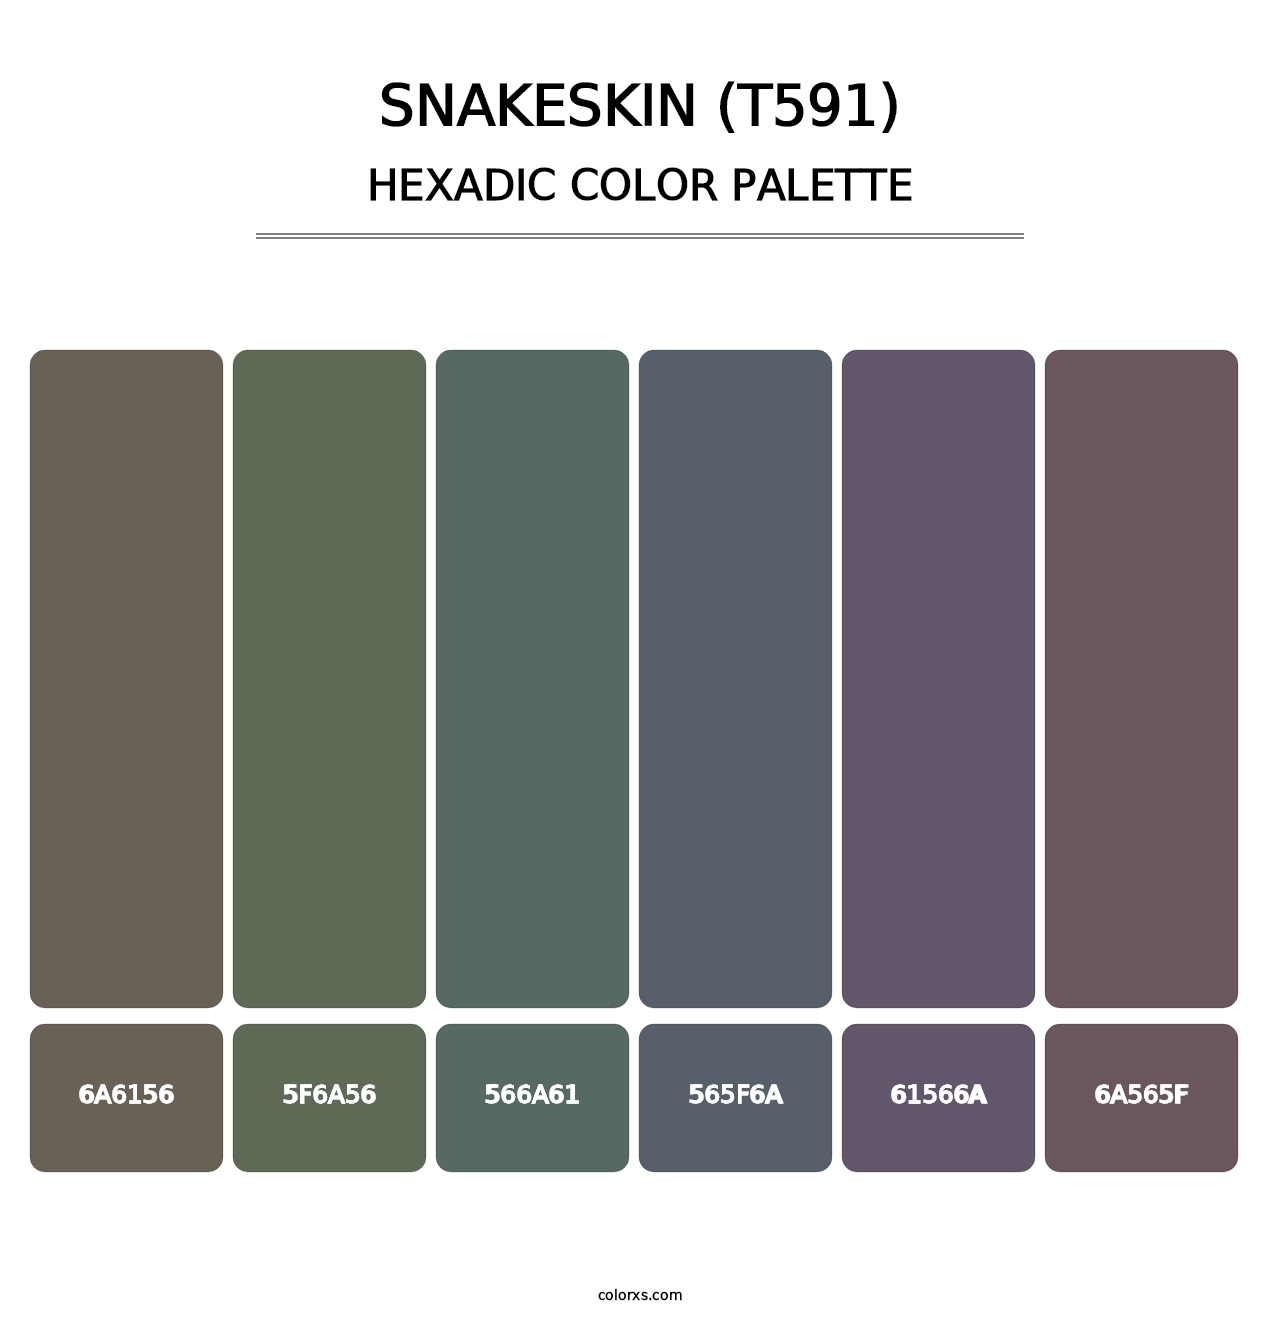 Snakeskin (T591) - Hexadic Color Palette